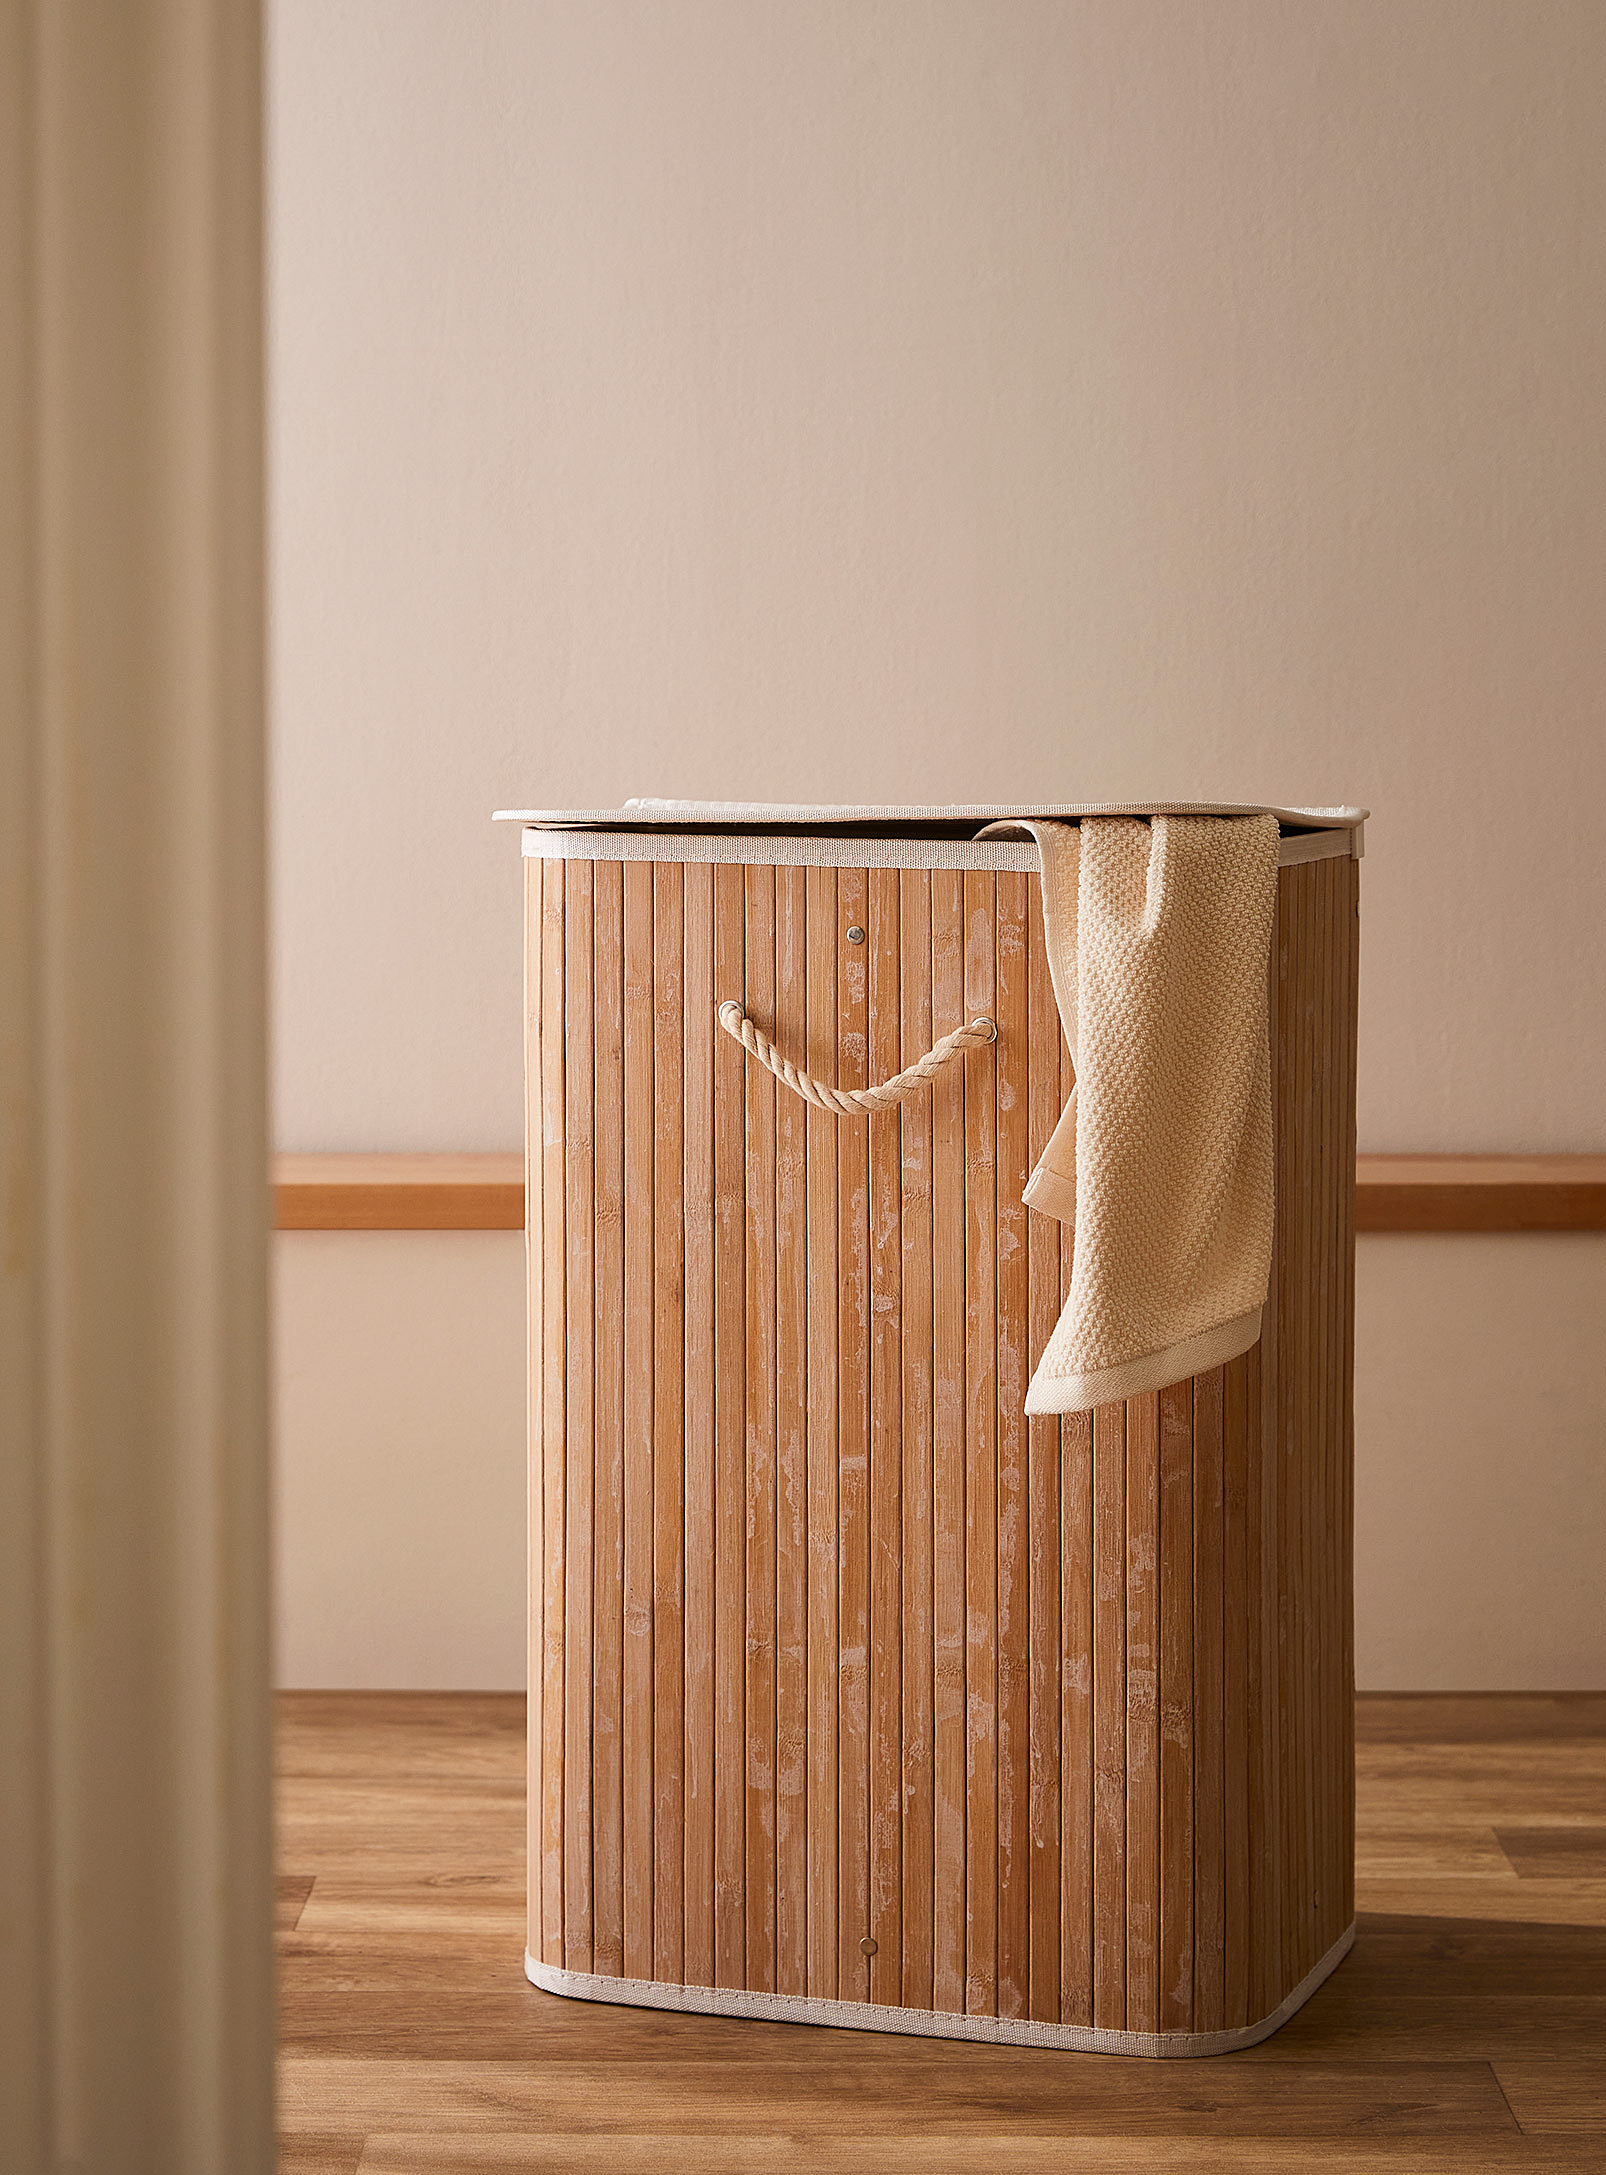 Simons Maison - Rectangular bamboo laundry basket